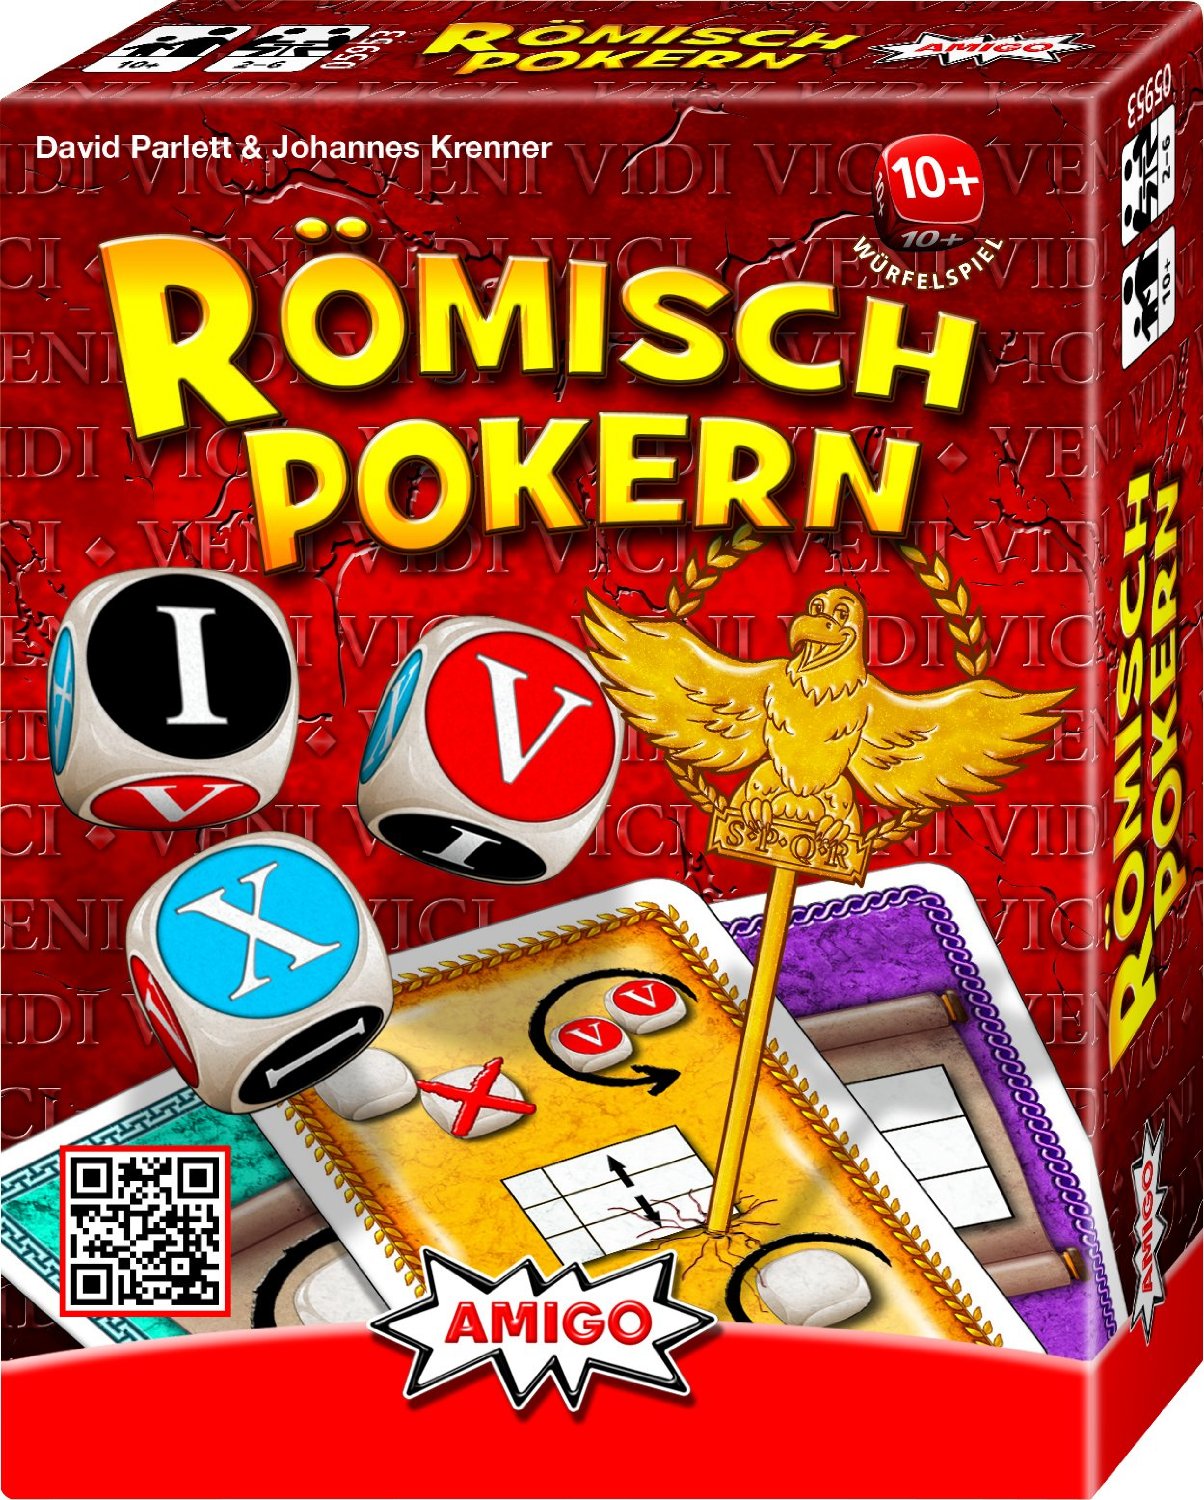 Rmisch Pokern - Wrfelspiel, Pokervariante von David Parlett & Johannes Krenner